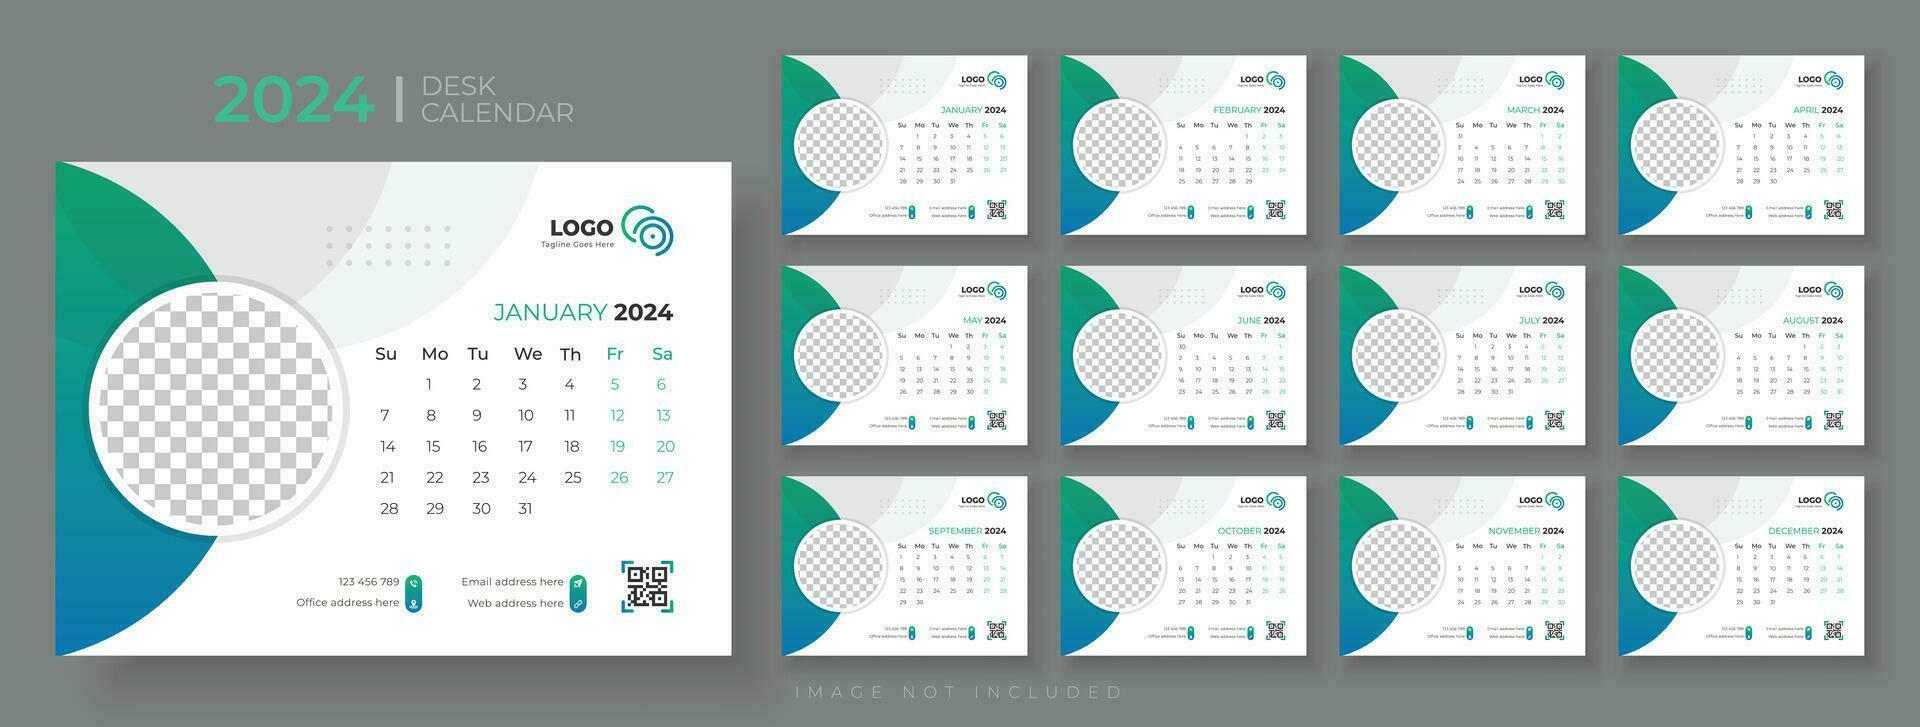 Schreibtisch Kalender 2024 Vorlage Design, Büro Kalender 2024, Woche beginnt auf Sonntag, Planer zum 2024 Jahr, Vorlage zum jährlich Kalender 2024 vektor